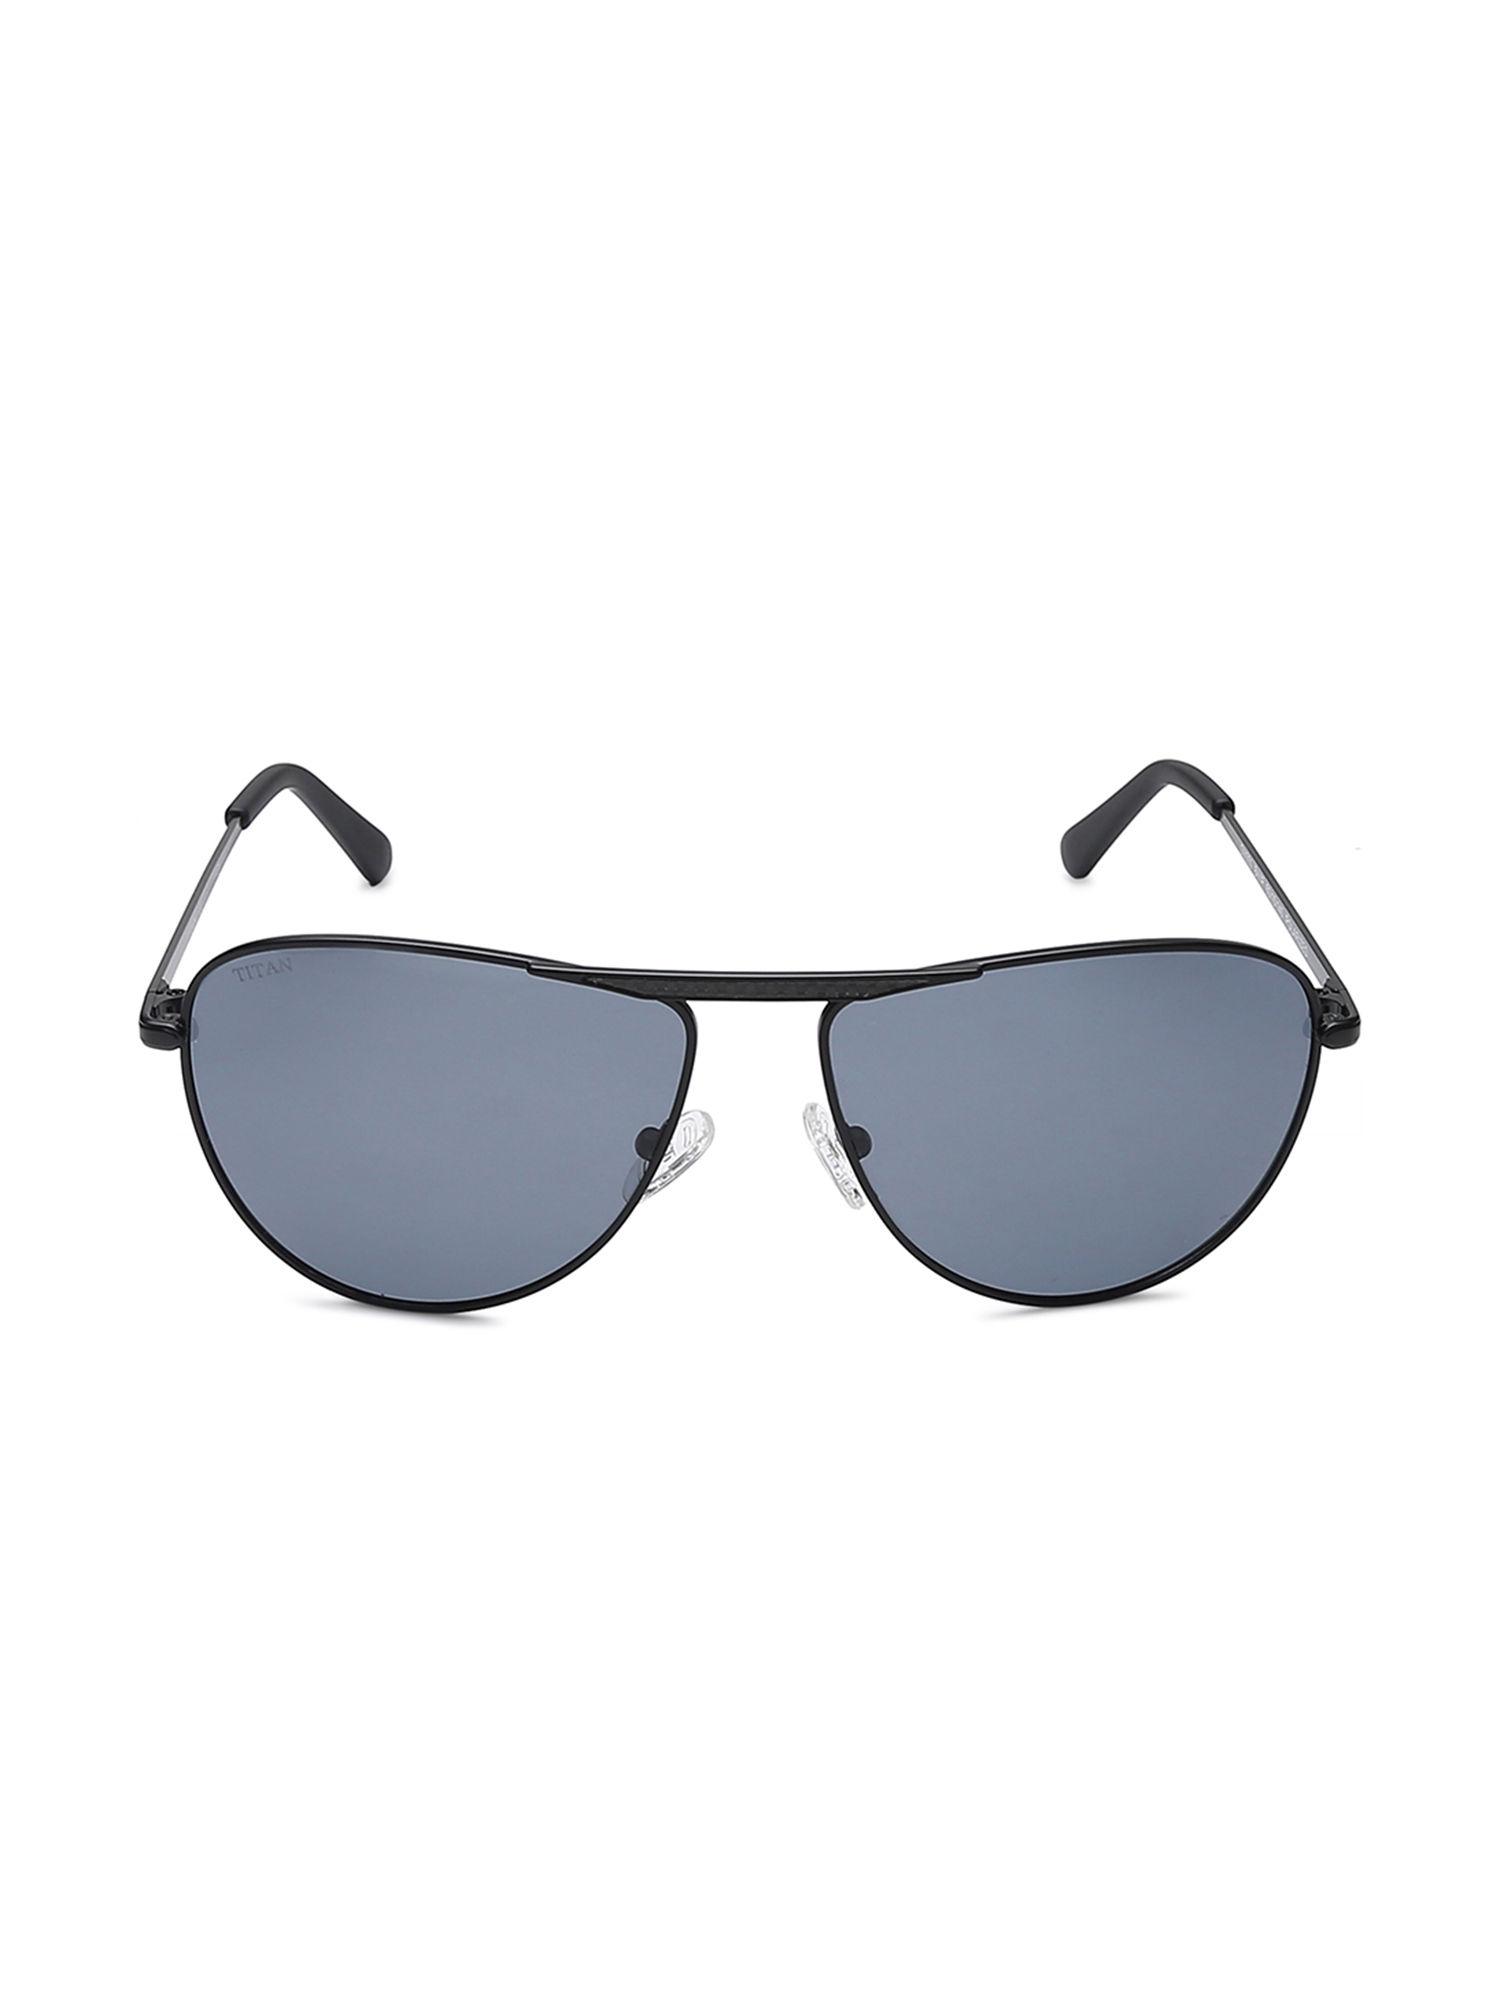 black square sunglasses (gm350bk1pv)